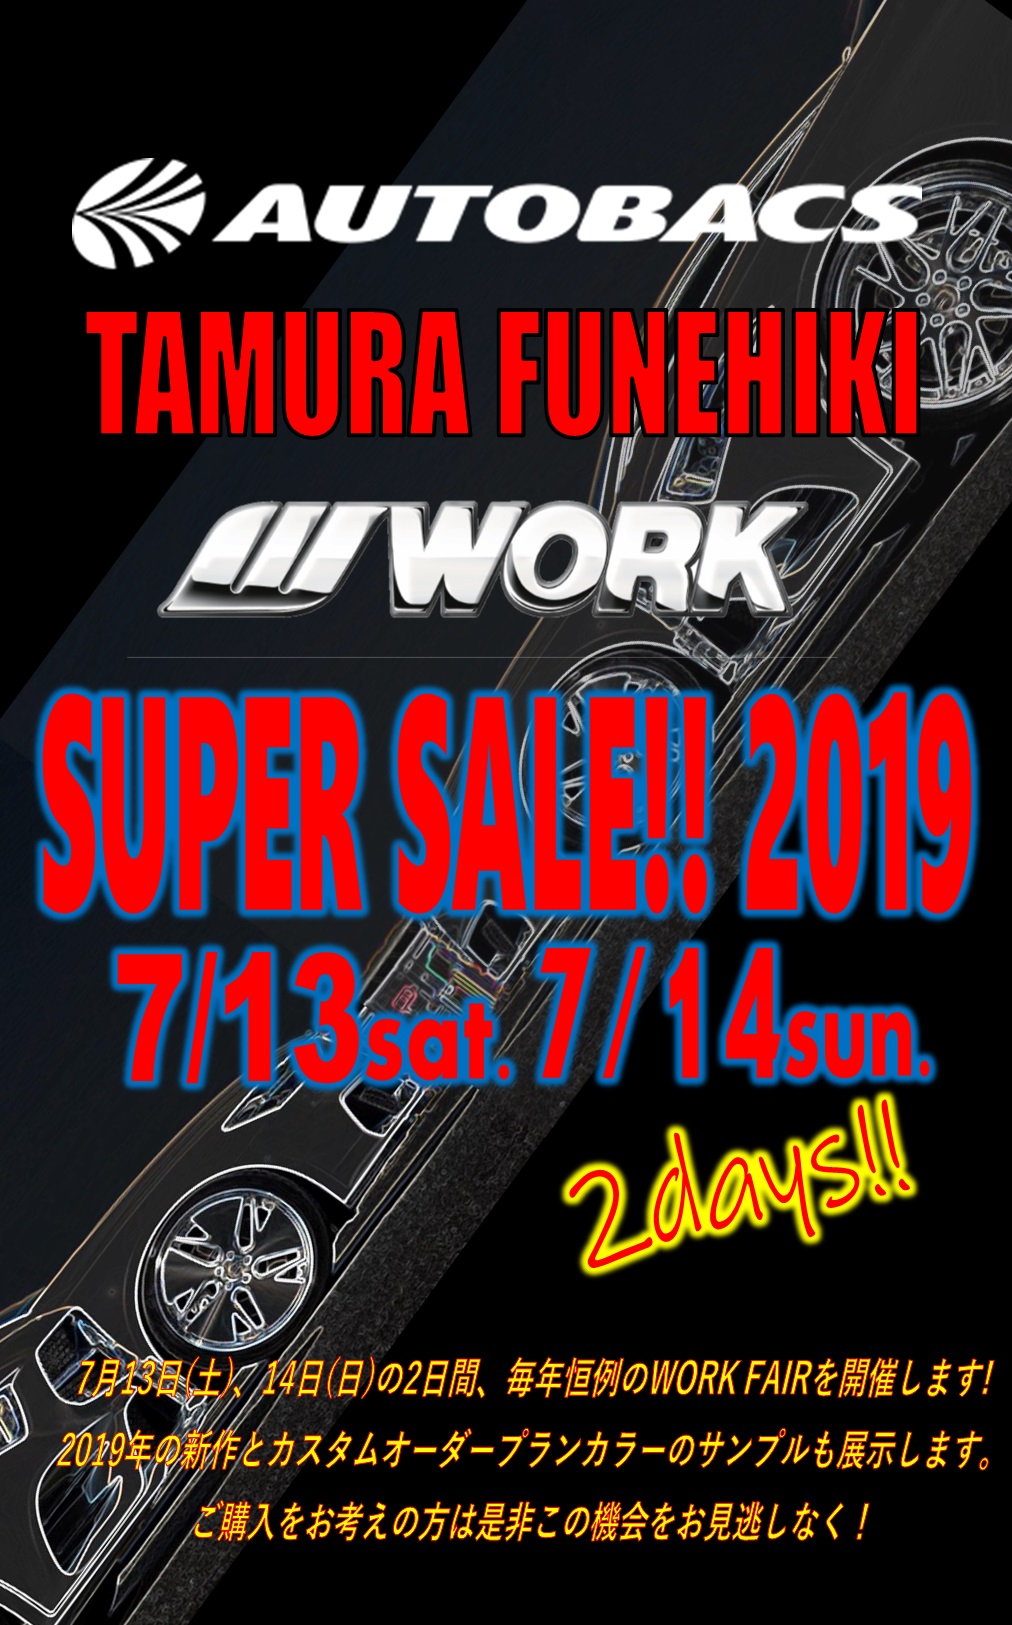 Autobacks Tamura Tohbiki WORK SUPER SALE 2019